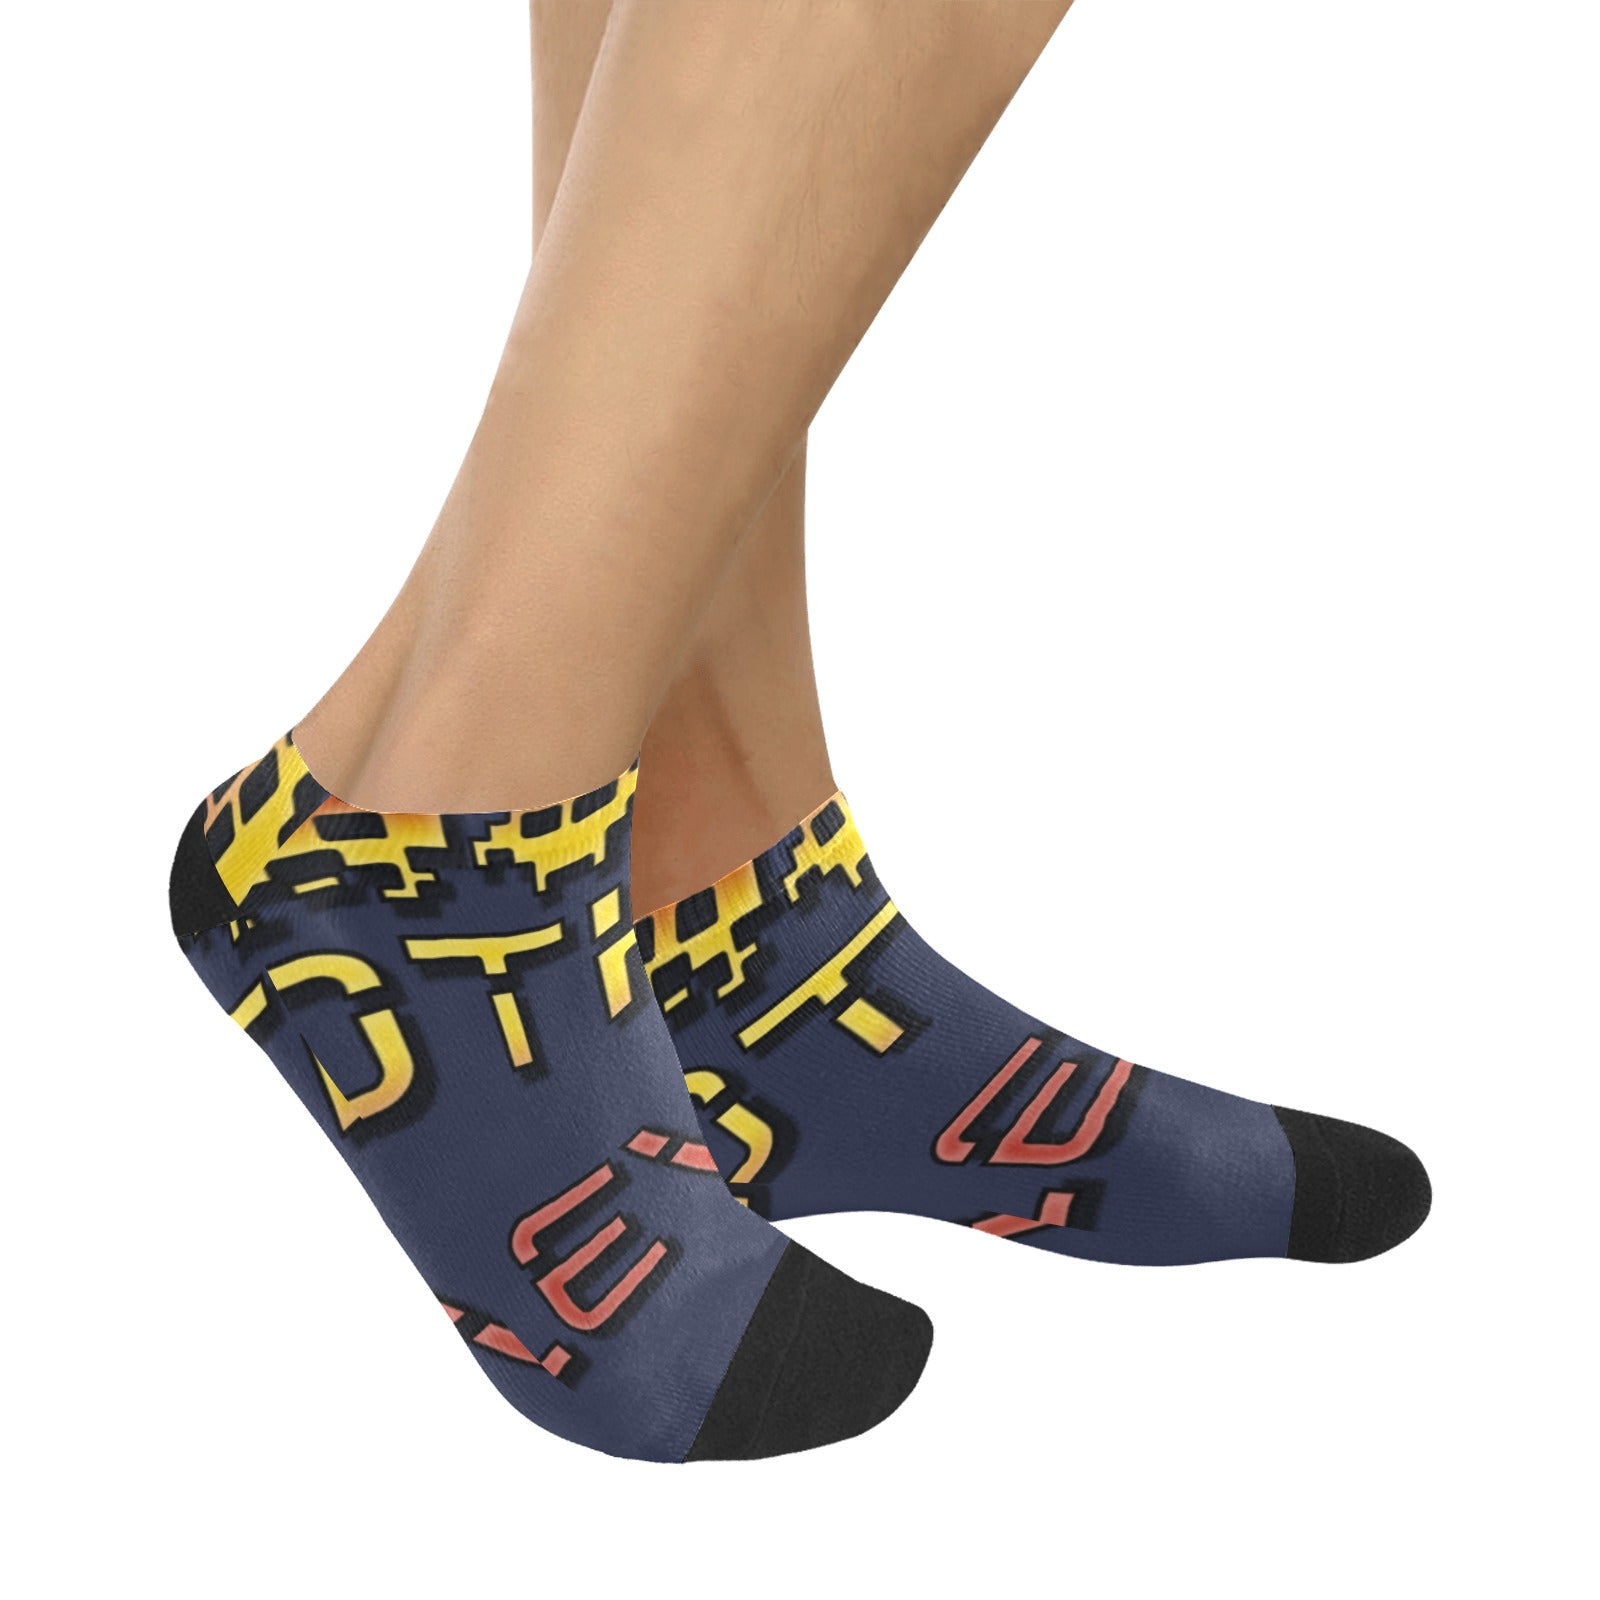 fz men's levels ankle socks one size / fz levels socks - dark blue men's ankle socks